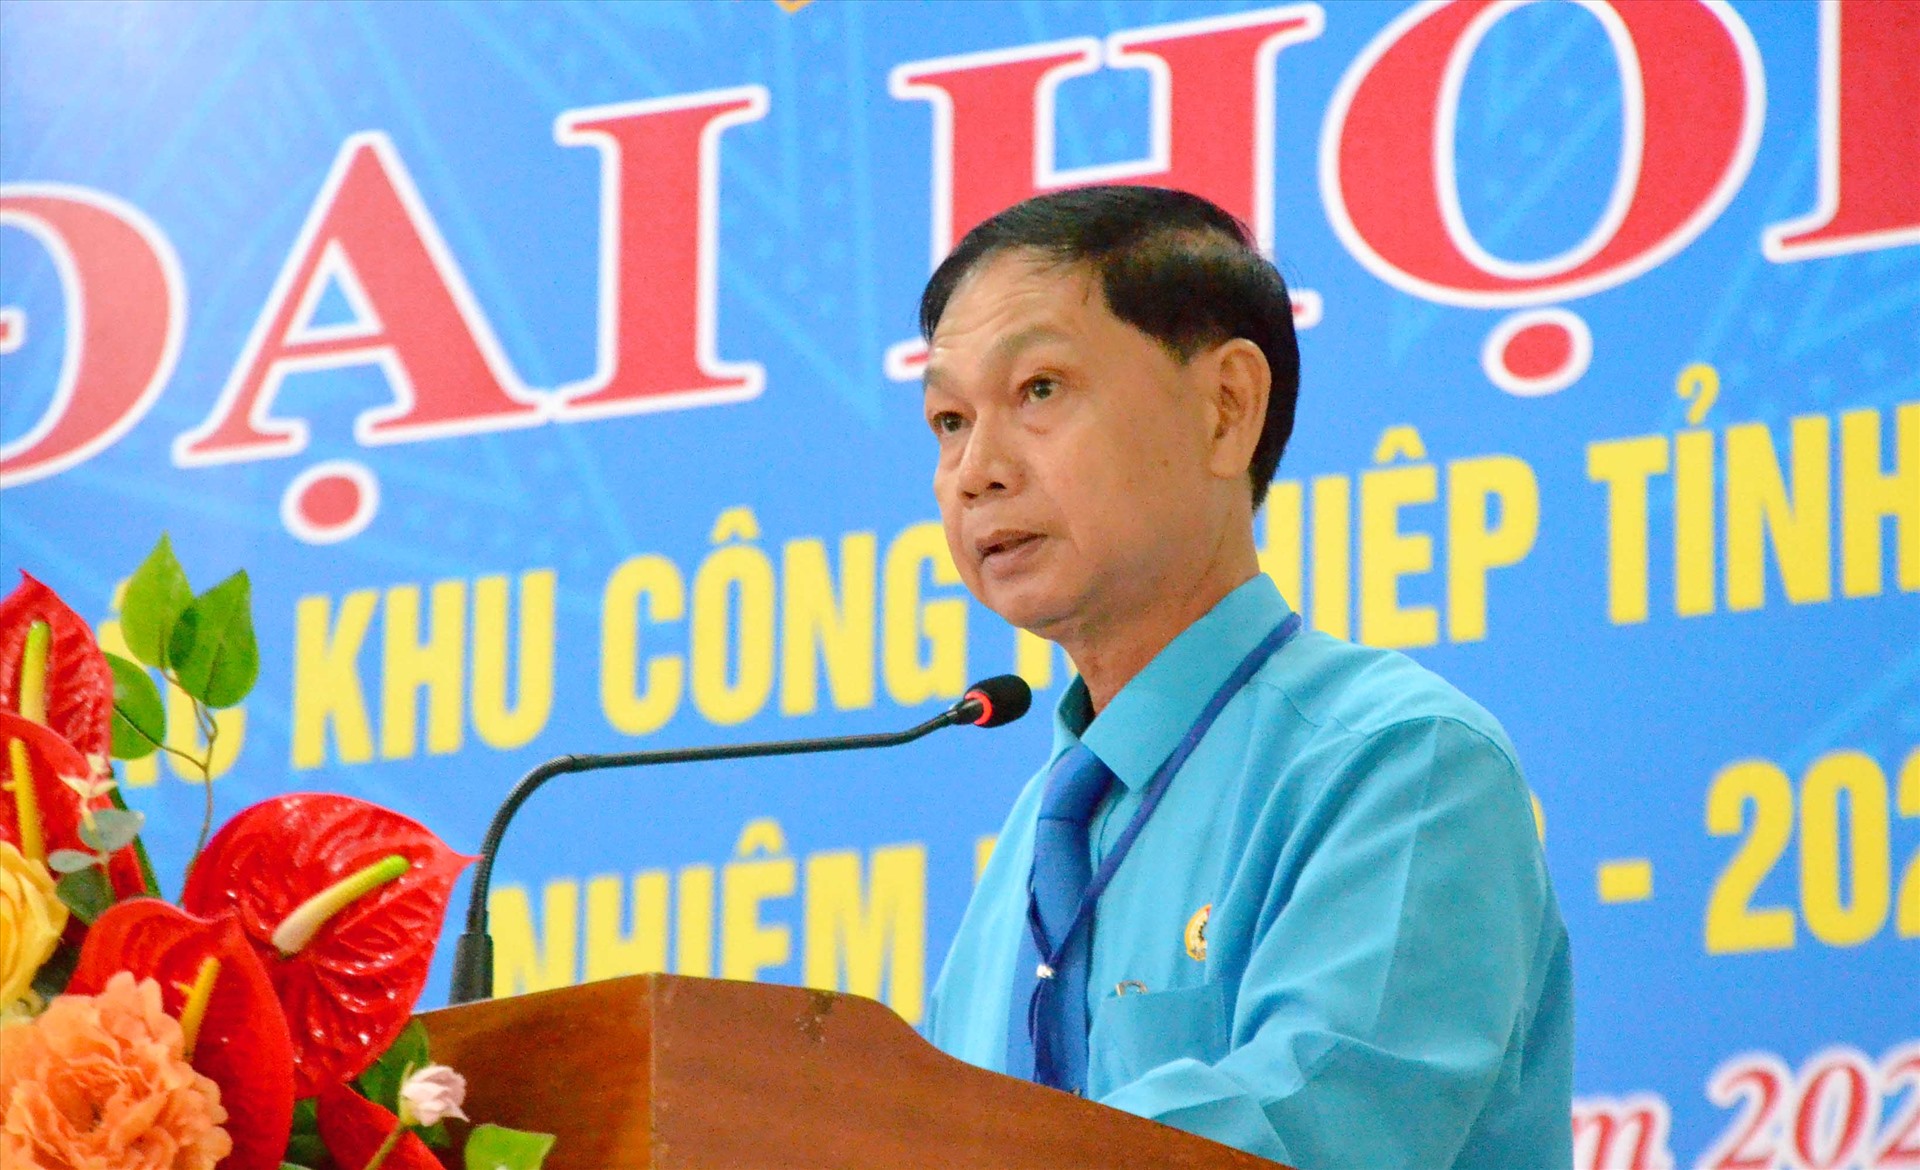 Chủ tịch Công đoàn các khu công nghiệp tỉnh An Giang Trần Lưu Phong báo cáo trước Đại hội về công tác chăm lo, hỗ trợ đoàn viên, người lao động. Ảnh: Lâm Điền